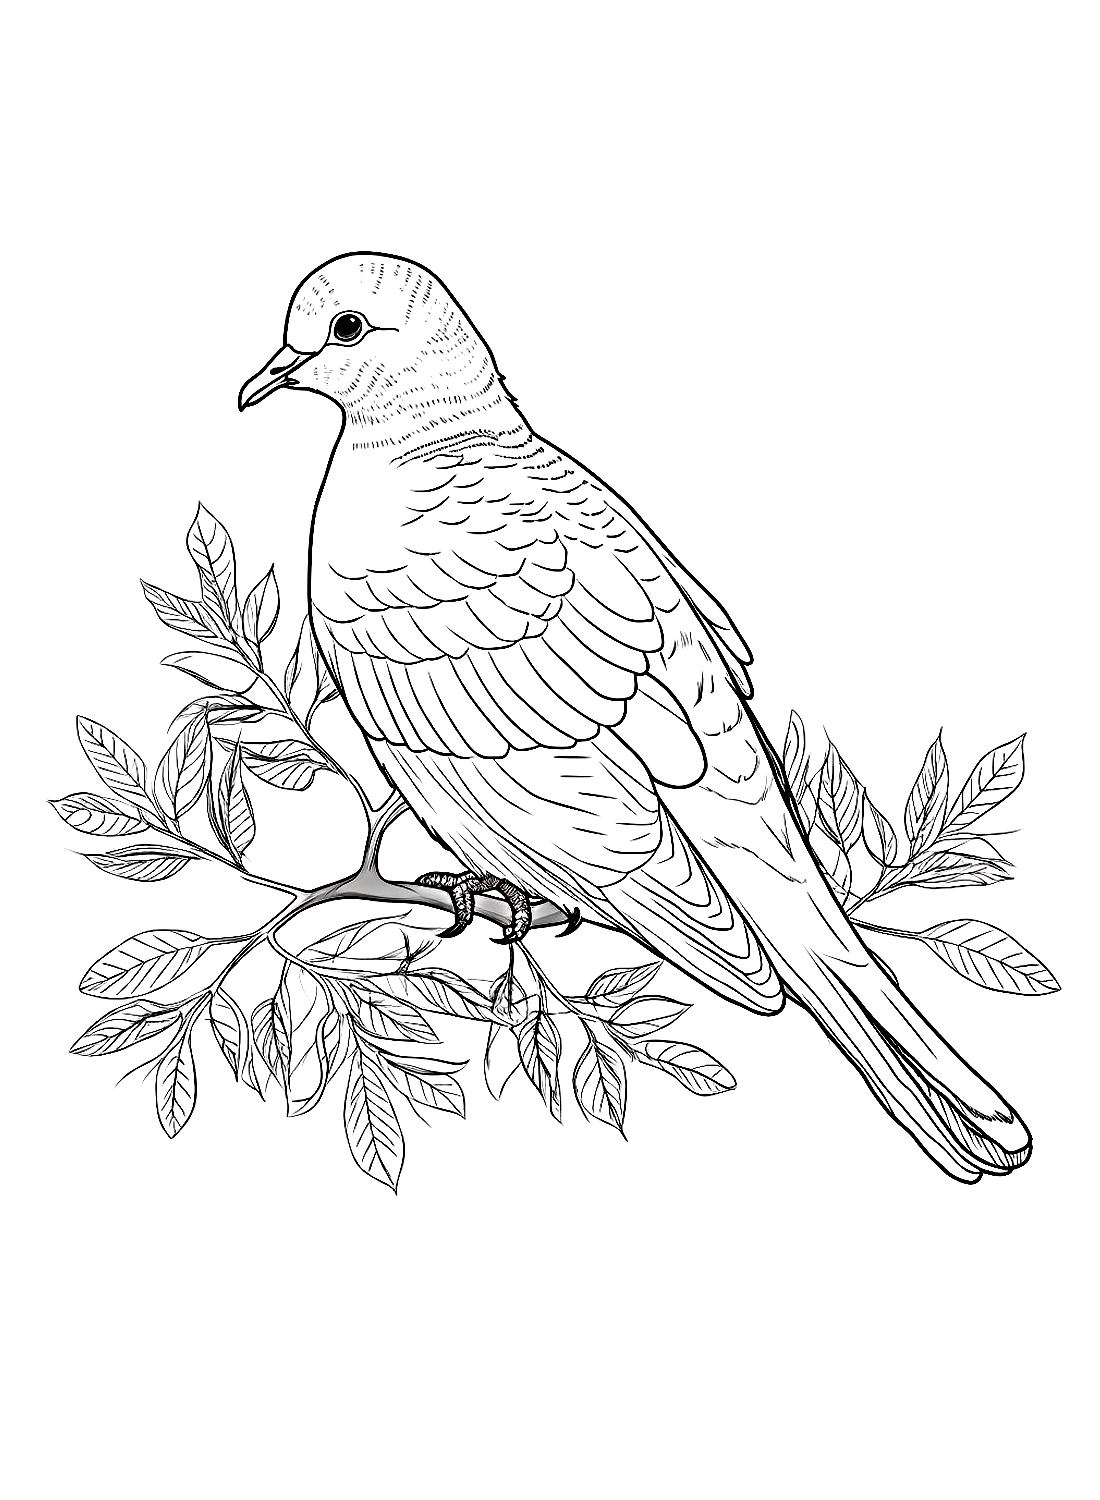 Een duif in de boom van Doves